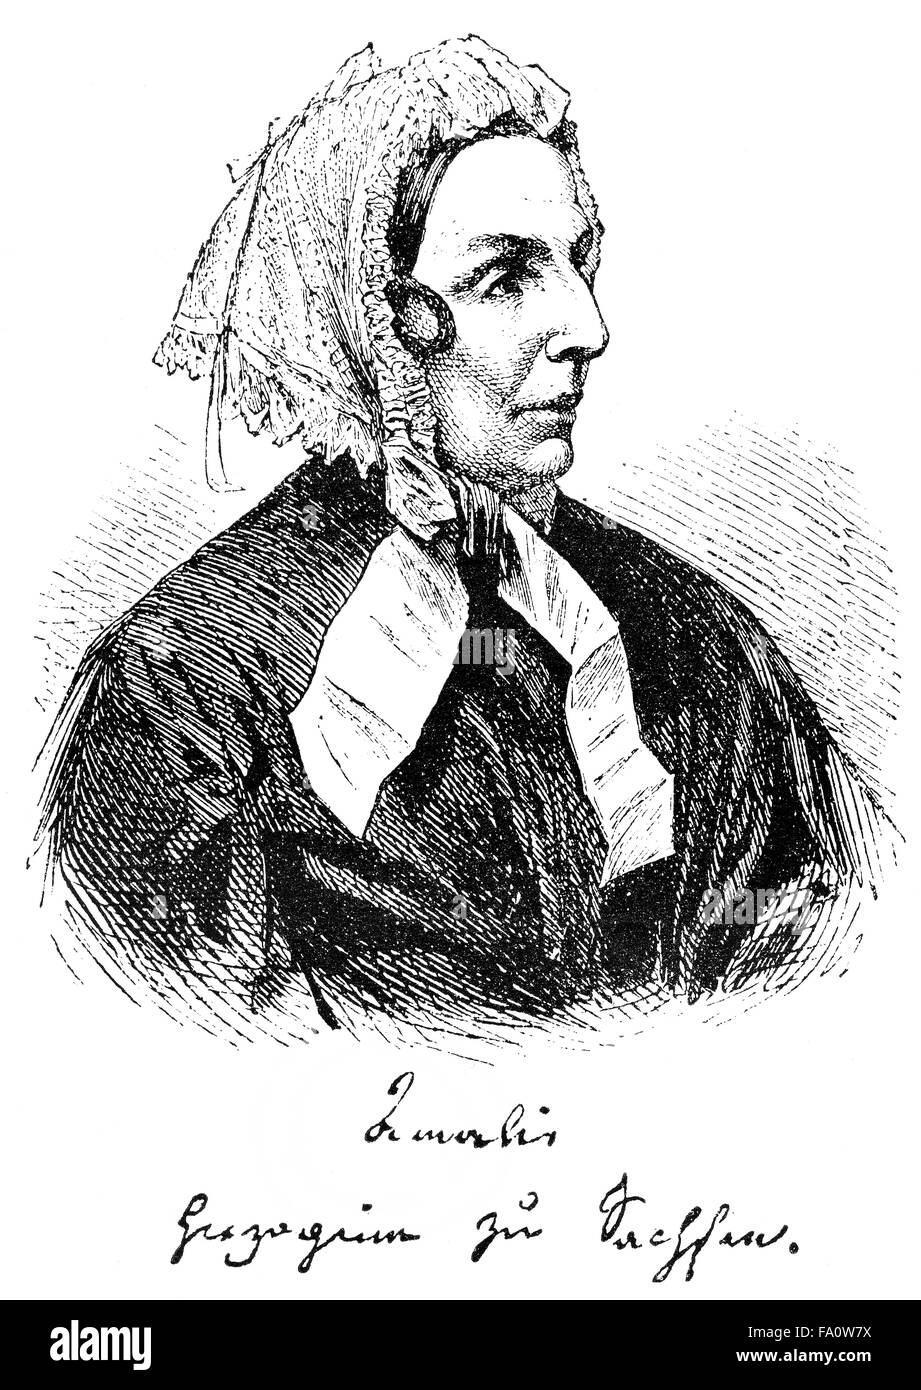 Amalie von Sachsen ou Amalie Heiter ou A. Serena, 1794-1870, princesse de Saxe, compositeur, auteur de pièces de théâtre et comédies Banque D'Images